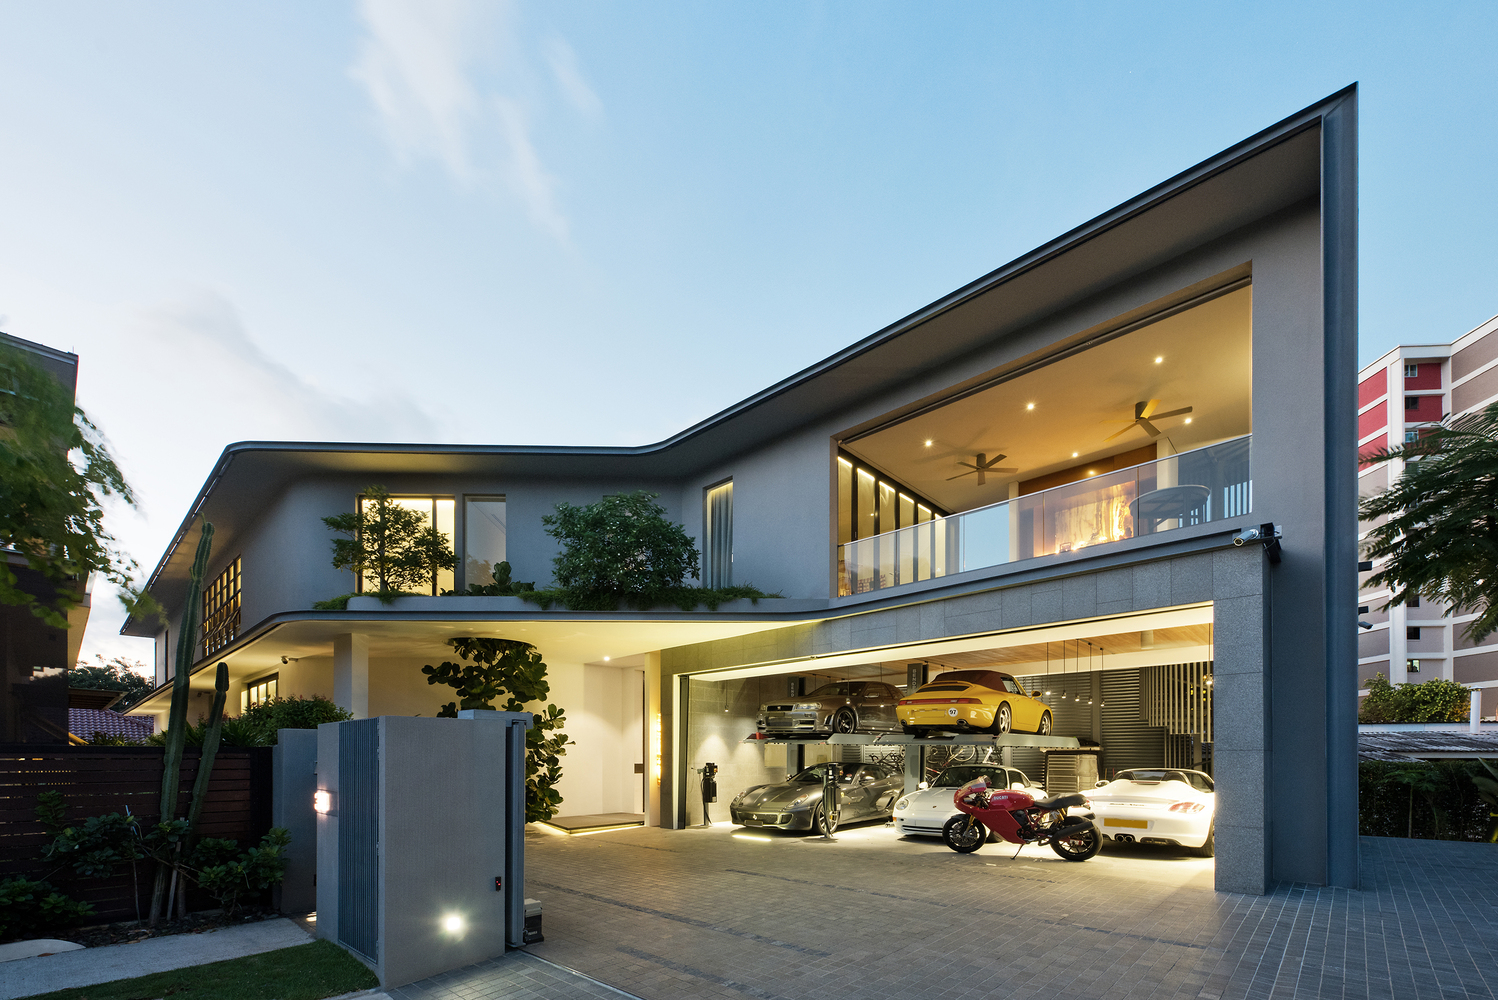 General 1498x1000 house modern architecture mansions luxury garage